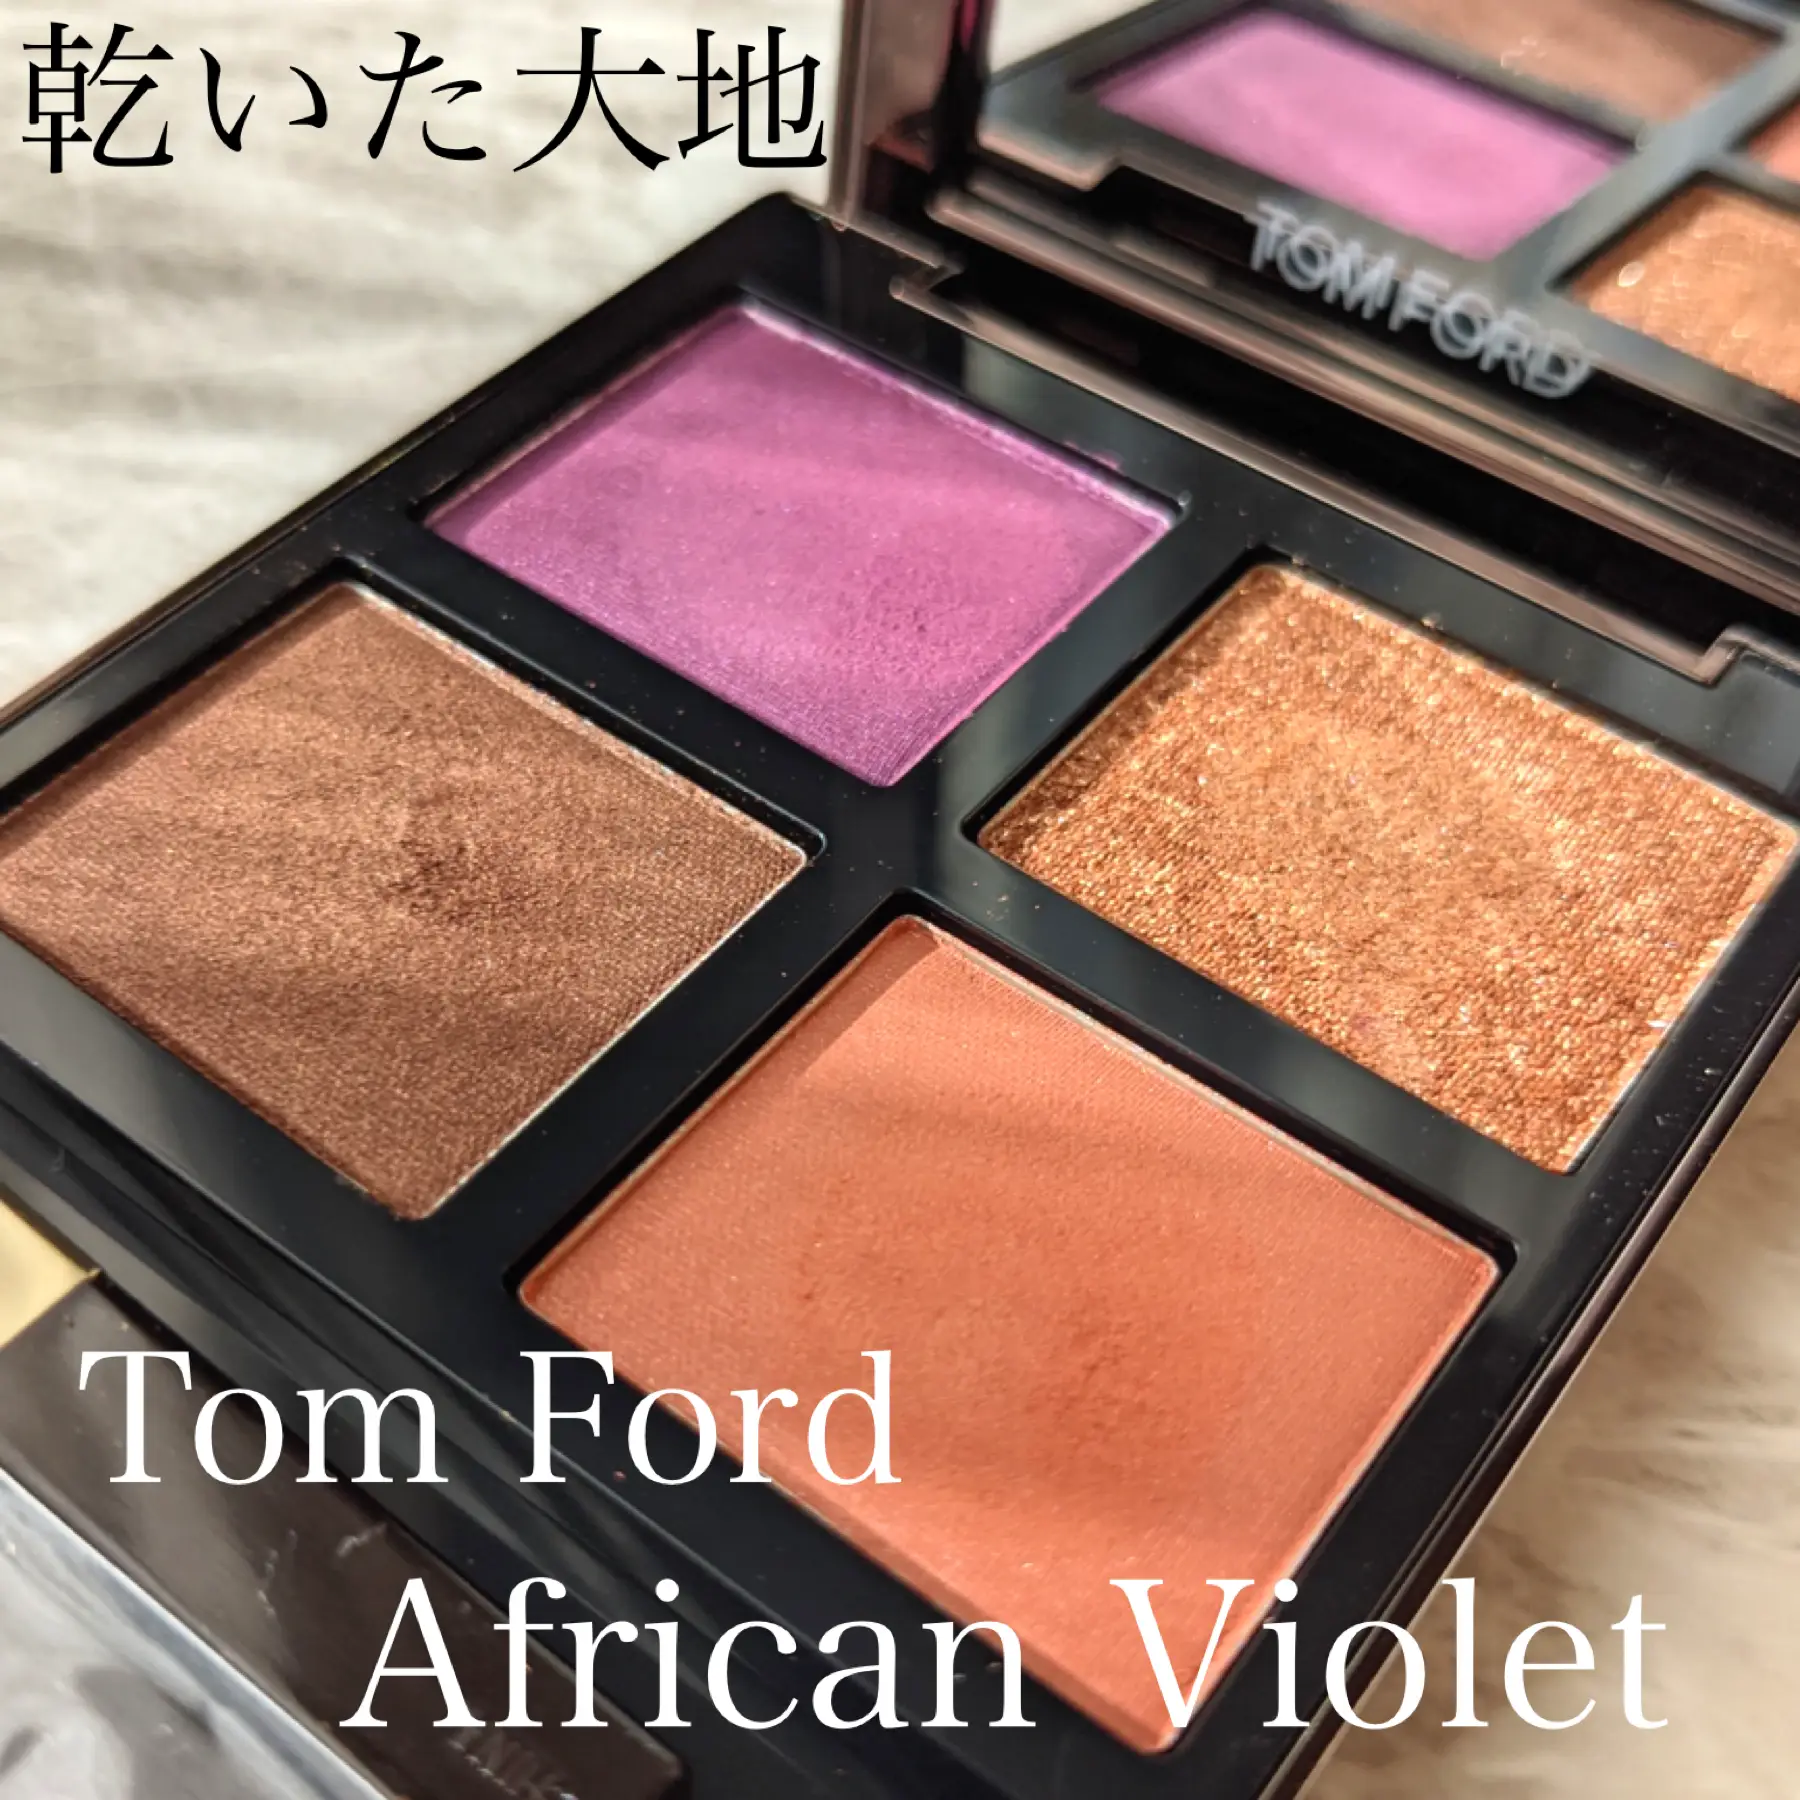 イメージは乾いた大地｜Tom Ford African Violet】 | るあが投稿したフォトブック | Lemon8